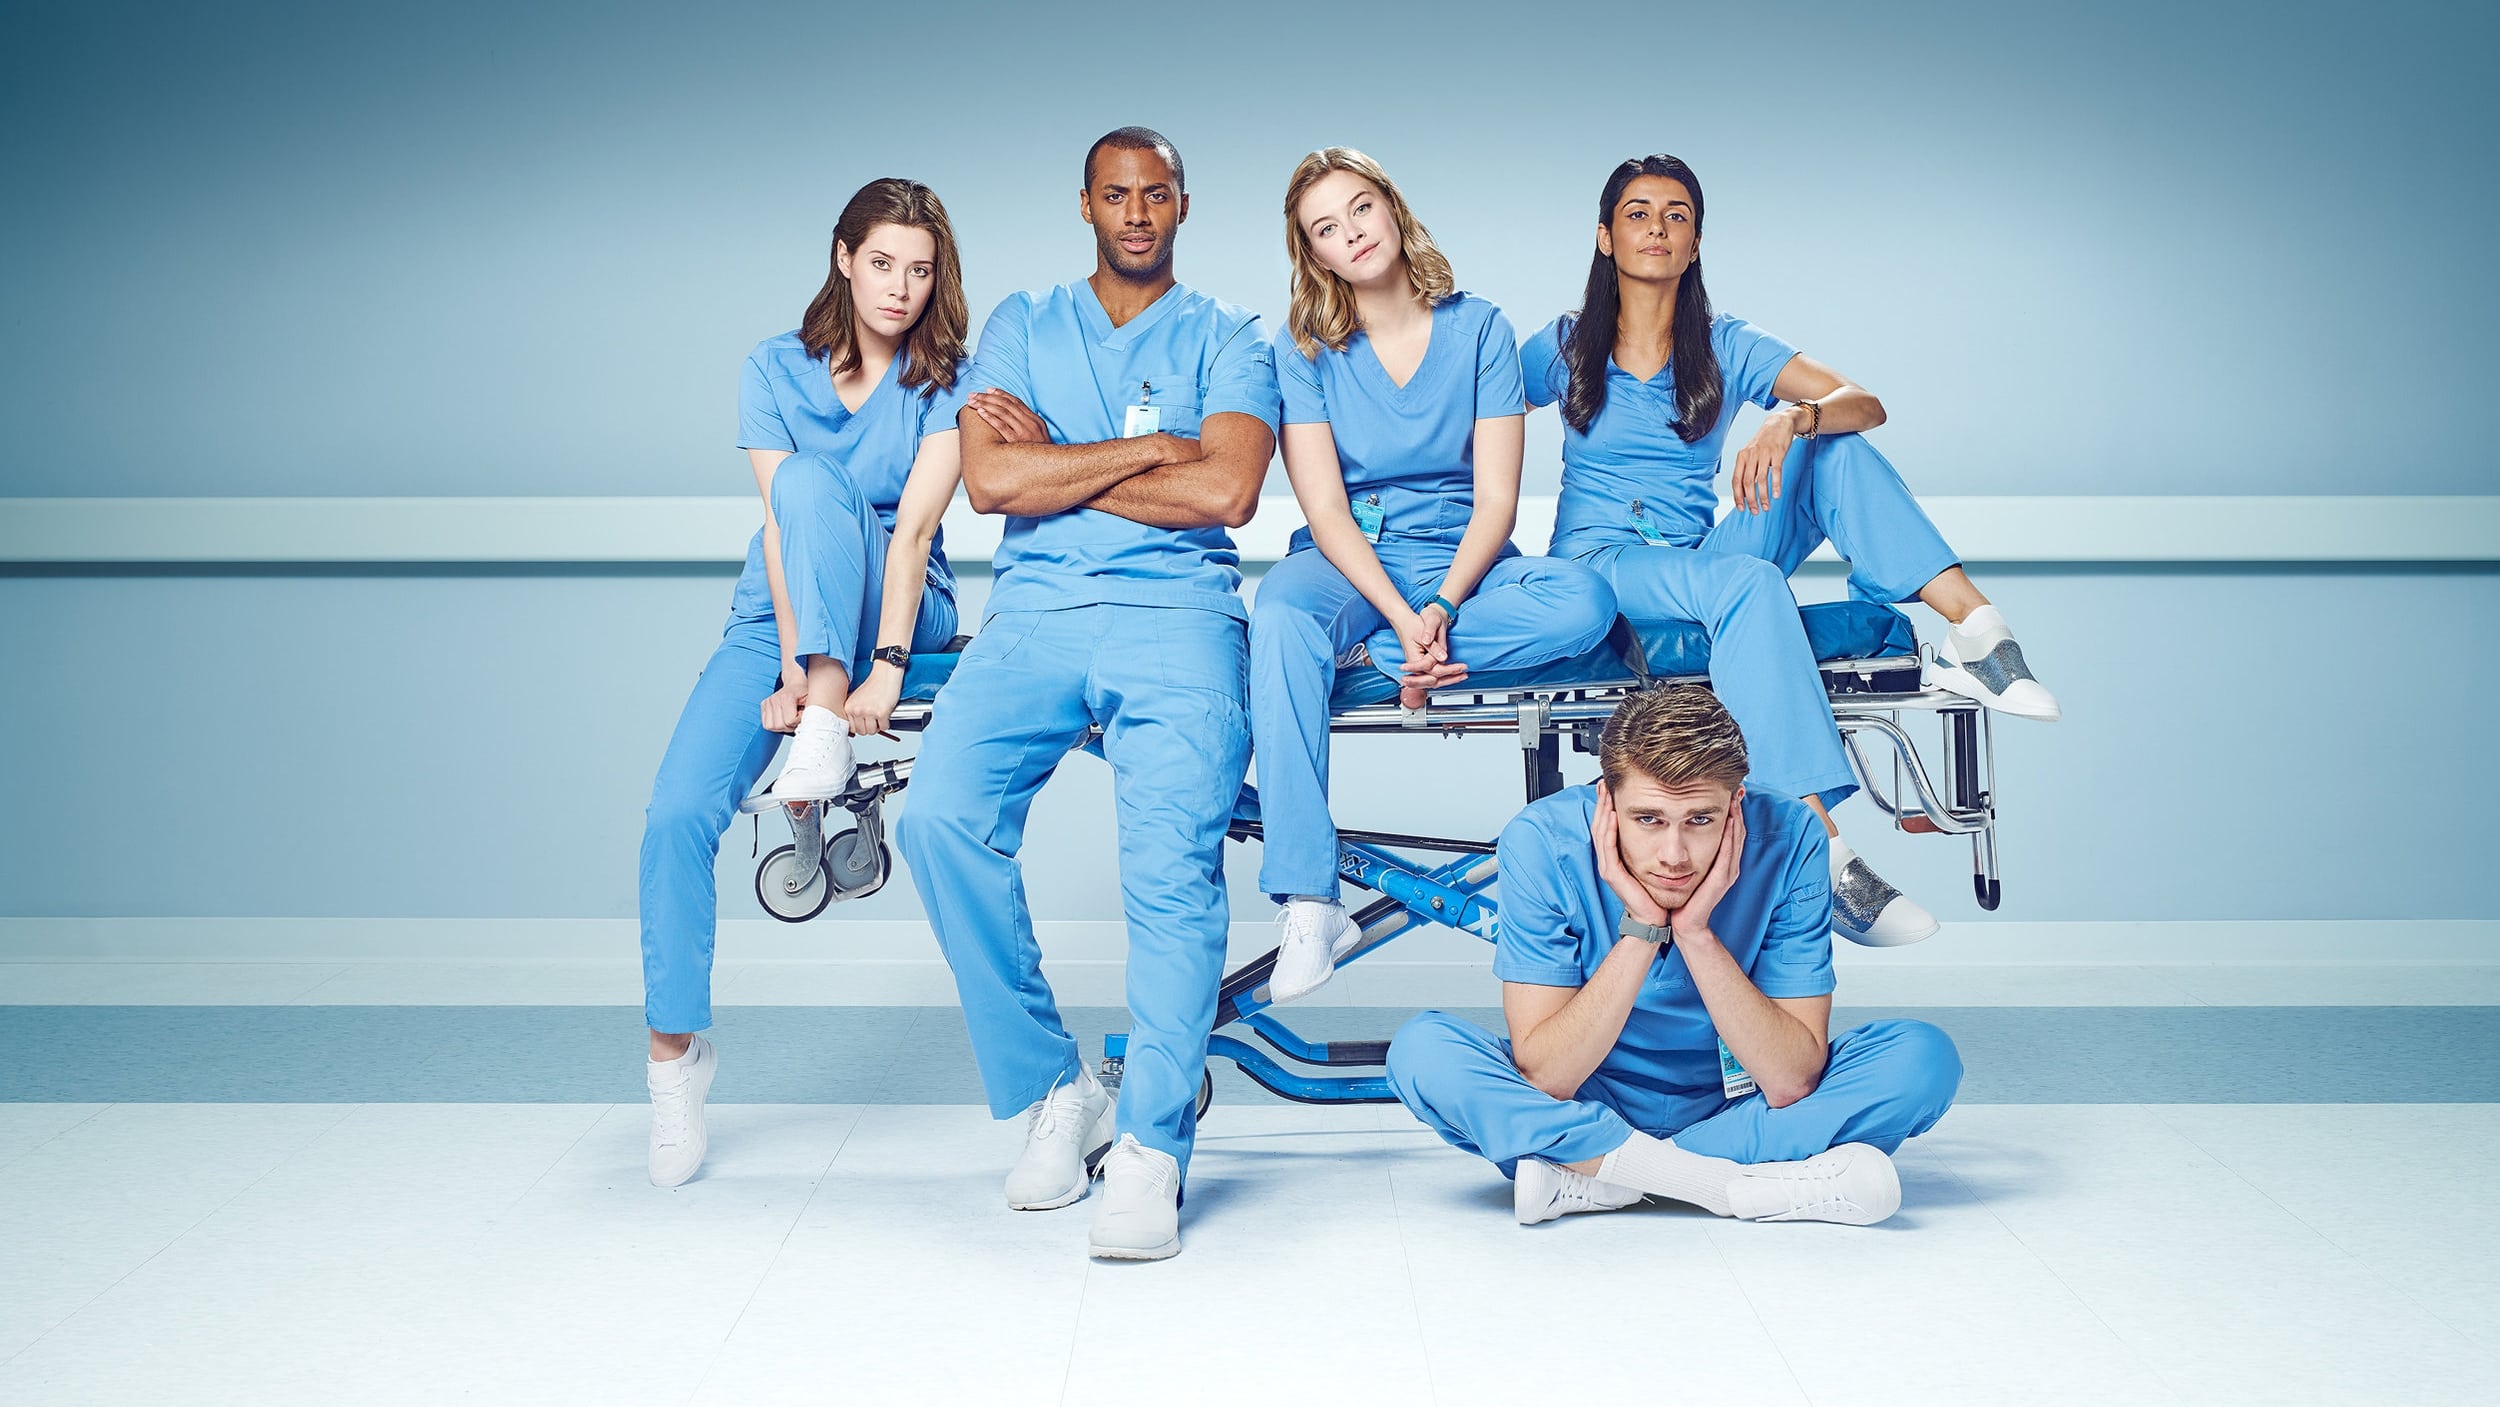 Nurses - Nel cuore dell'emergenza